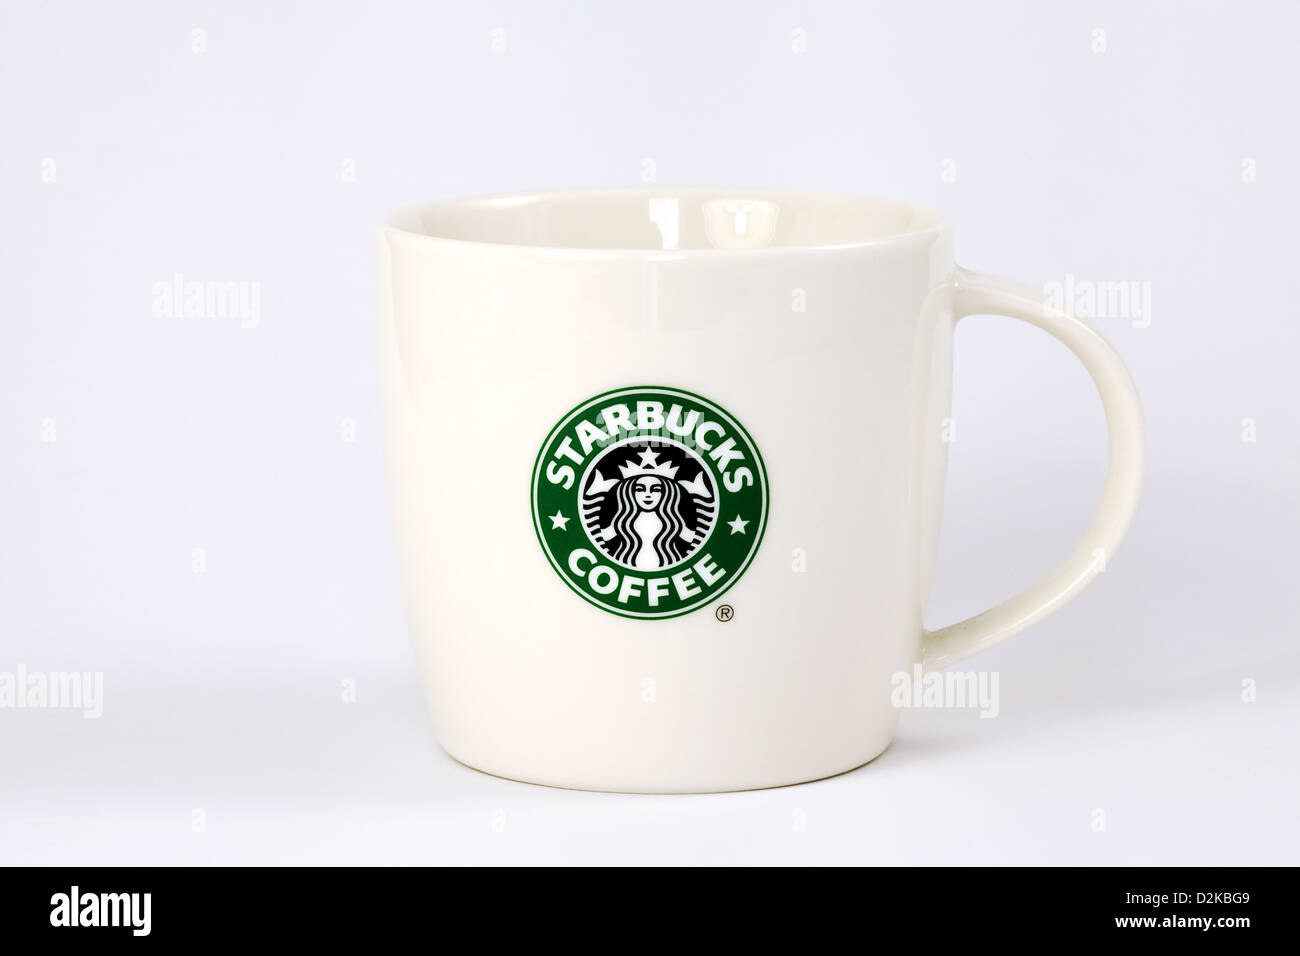 Starbucks Tasse Stockfotos und -bilder Kaufen - Alamy